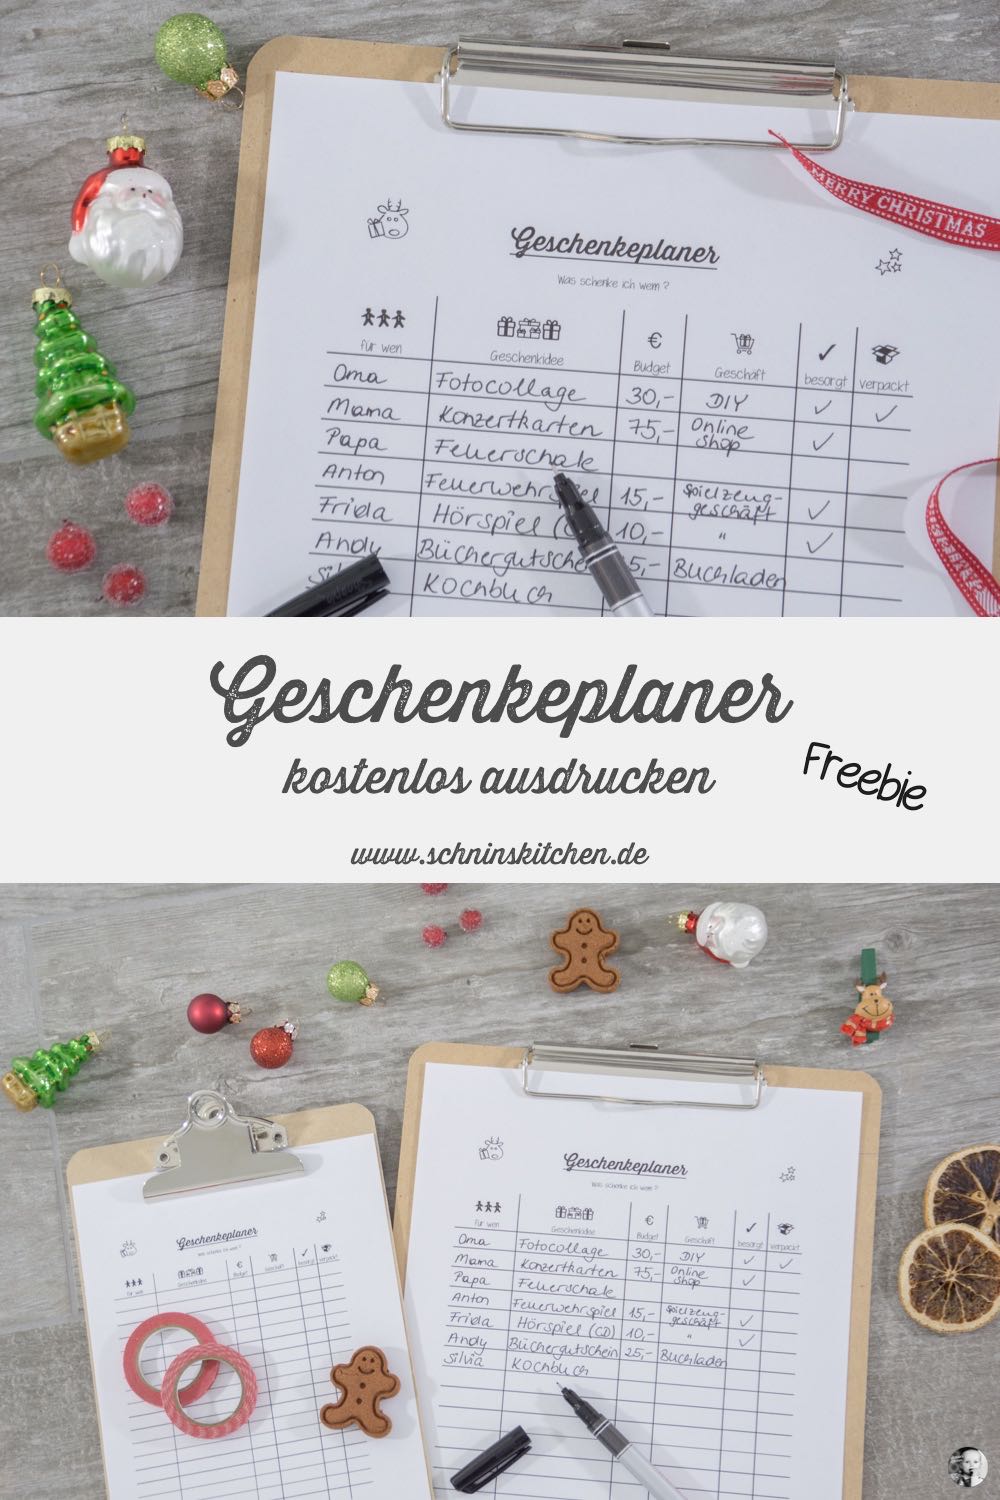 Geschenkeplaner für Weihnachten - Freebie | www.schninskitchen.de